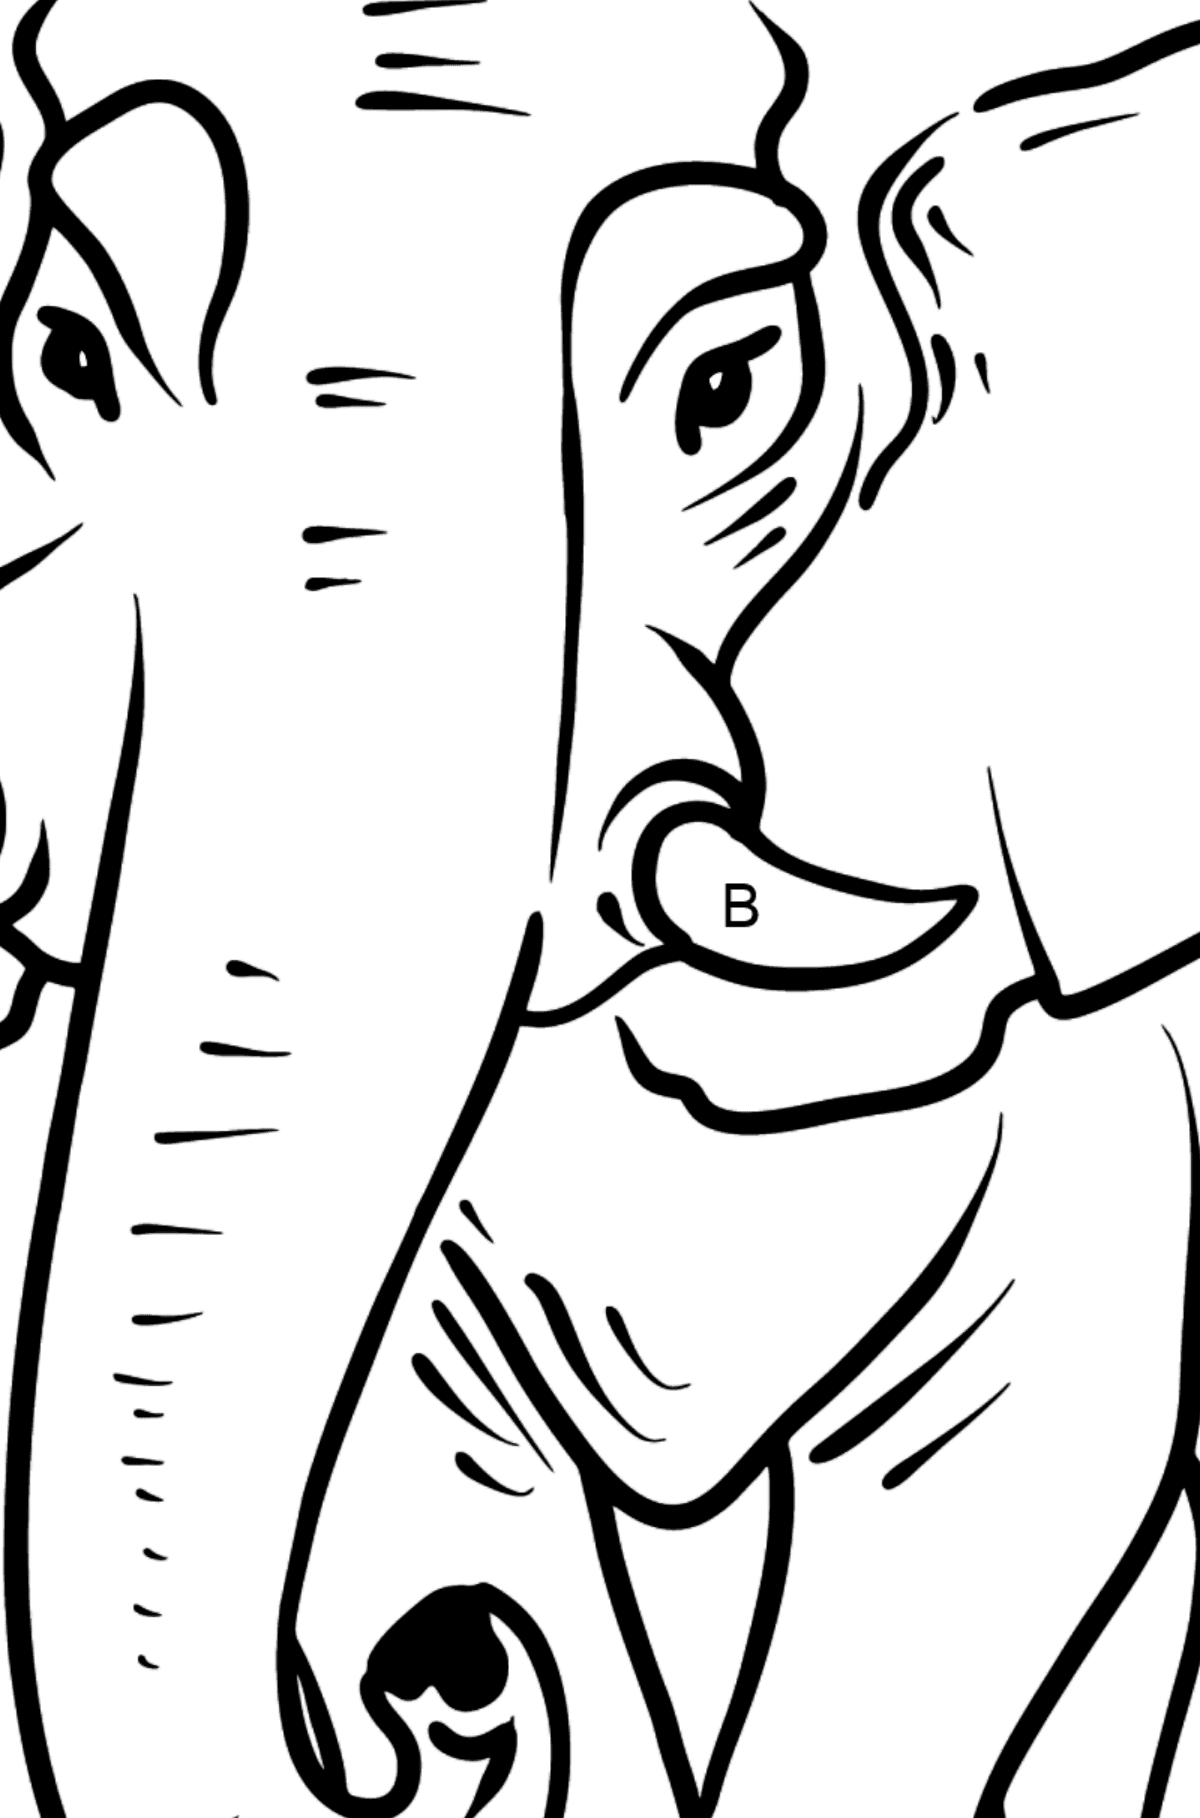 Dibujo de elefante para colorear - Colorear por Letras para Niños